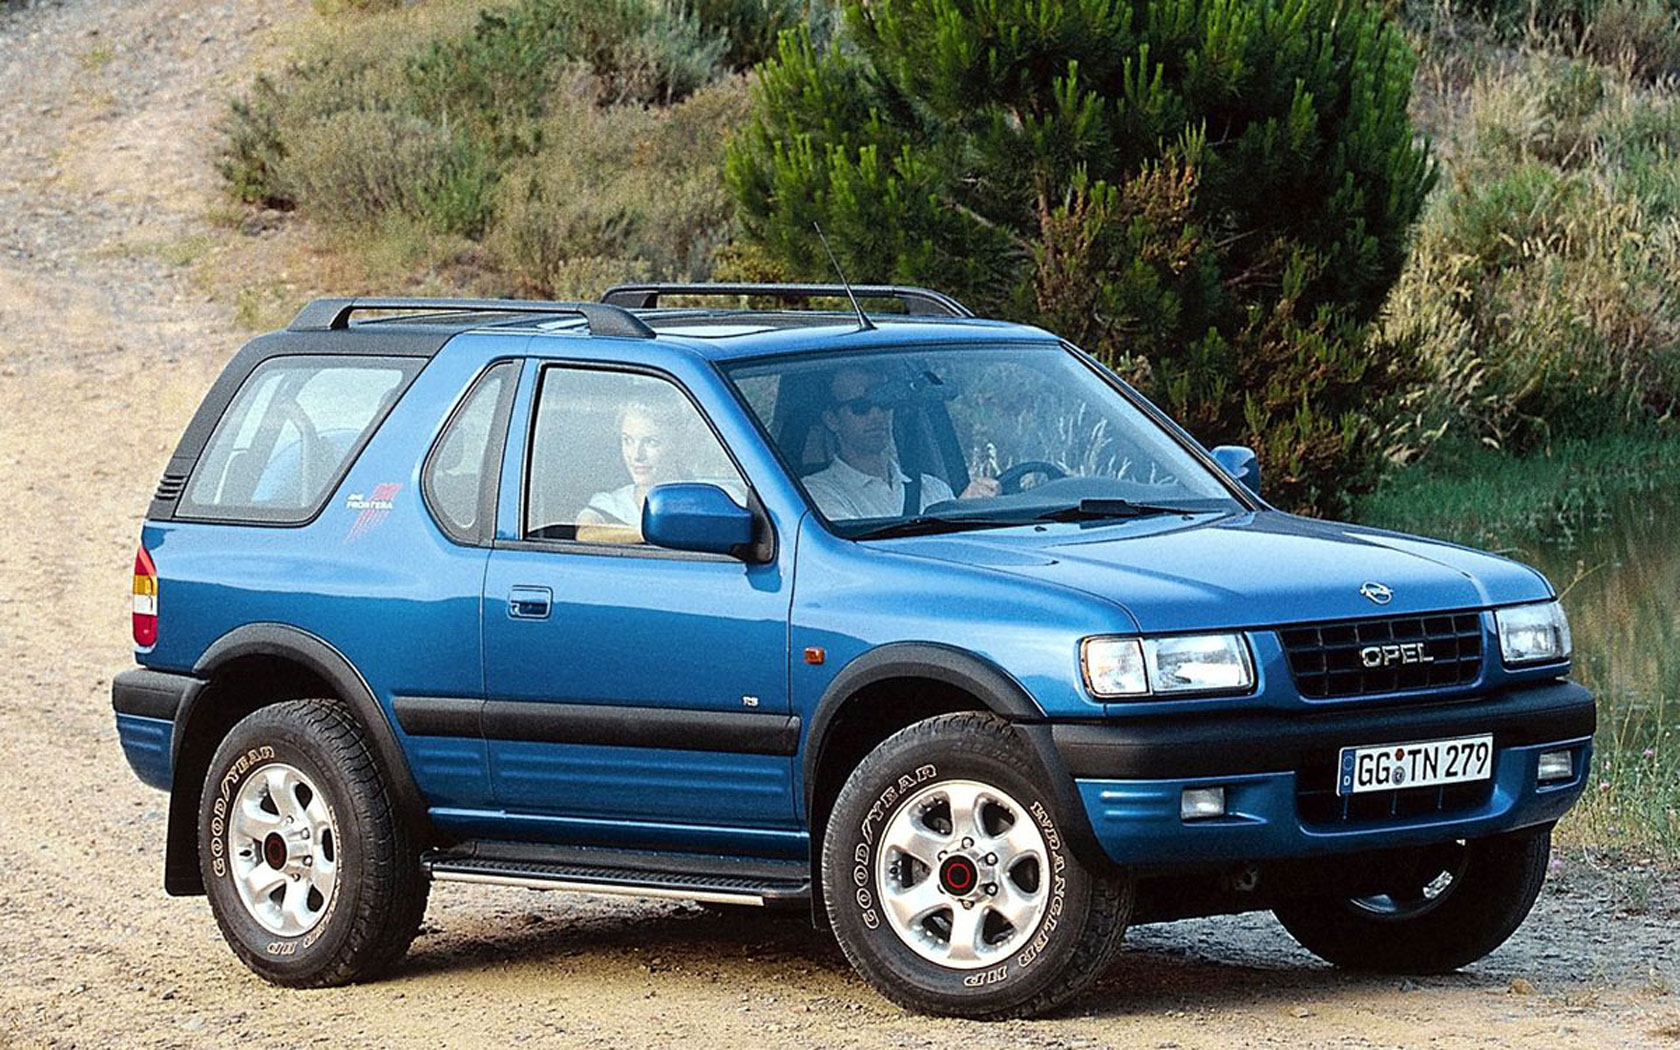  Opel Frontera Sport (1998-2001)